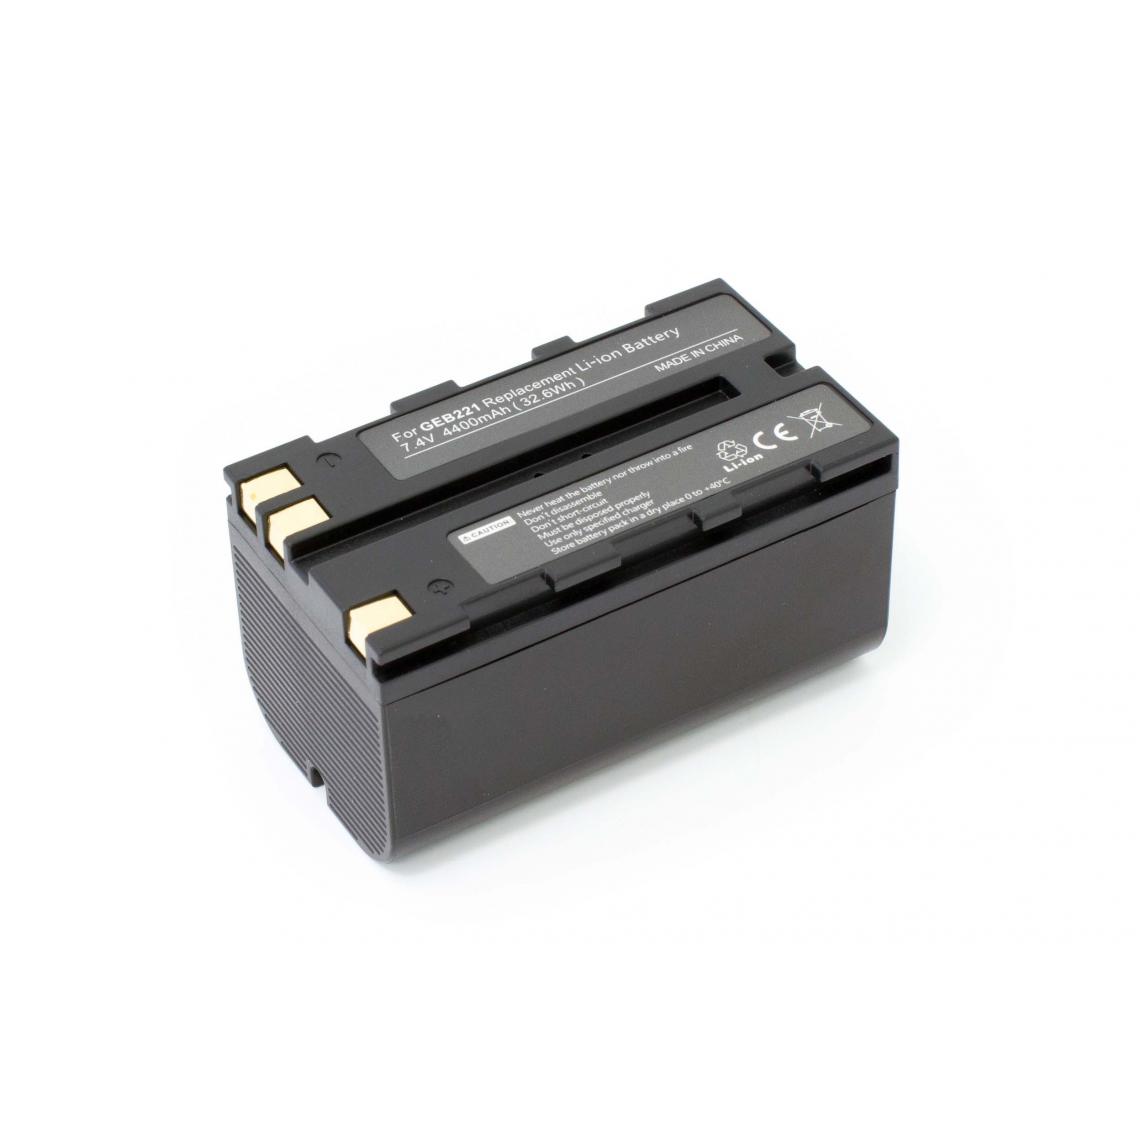 Vhbw - vhbw Batterie compatible avec Leica Viva GS08 plus NetRover dispositif de mesure laser, outil de mesure (4400mAh, 7,4V, Li-ion) - Piles rechargeables